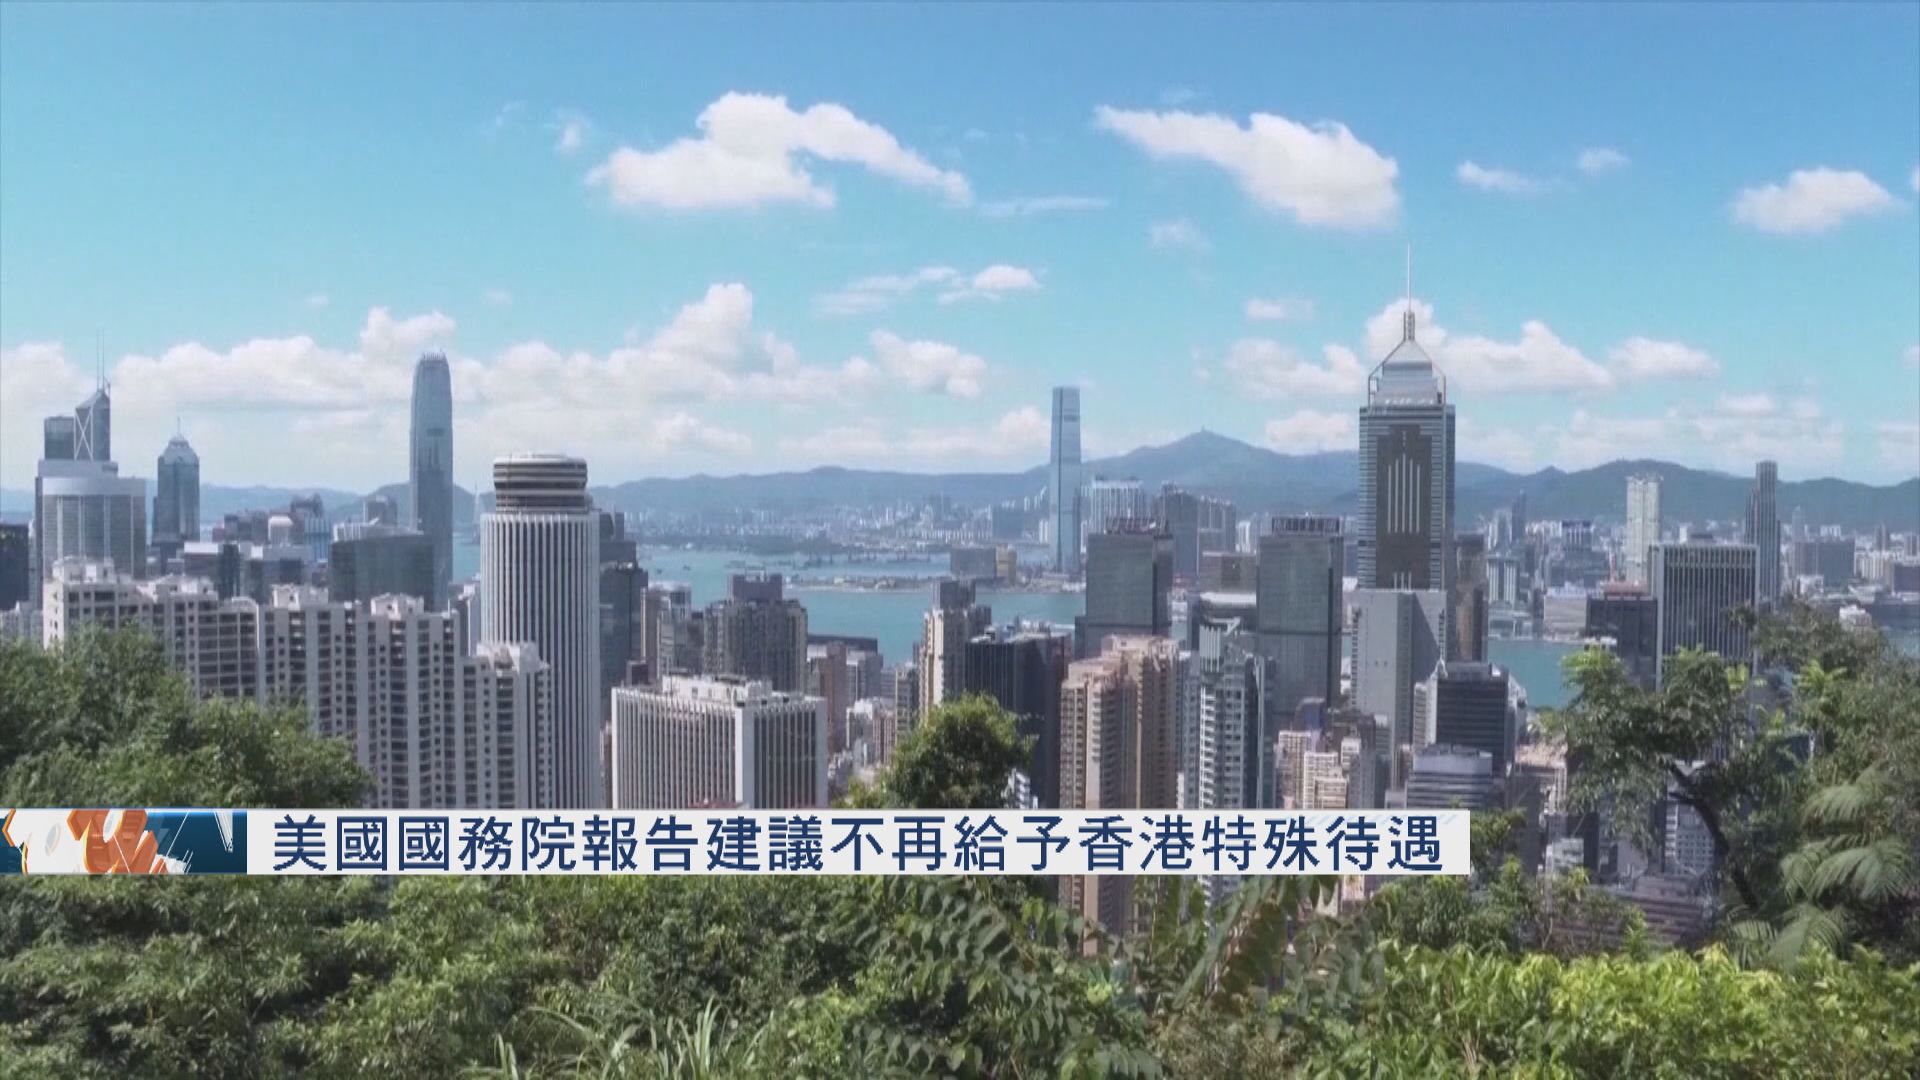 美國國務院報告建議不再給予香港特殊待遇